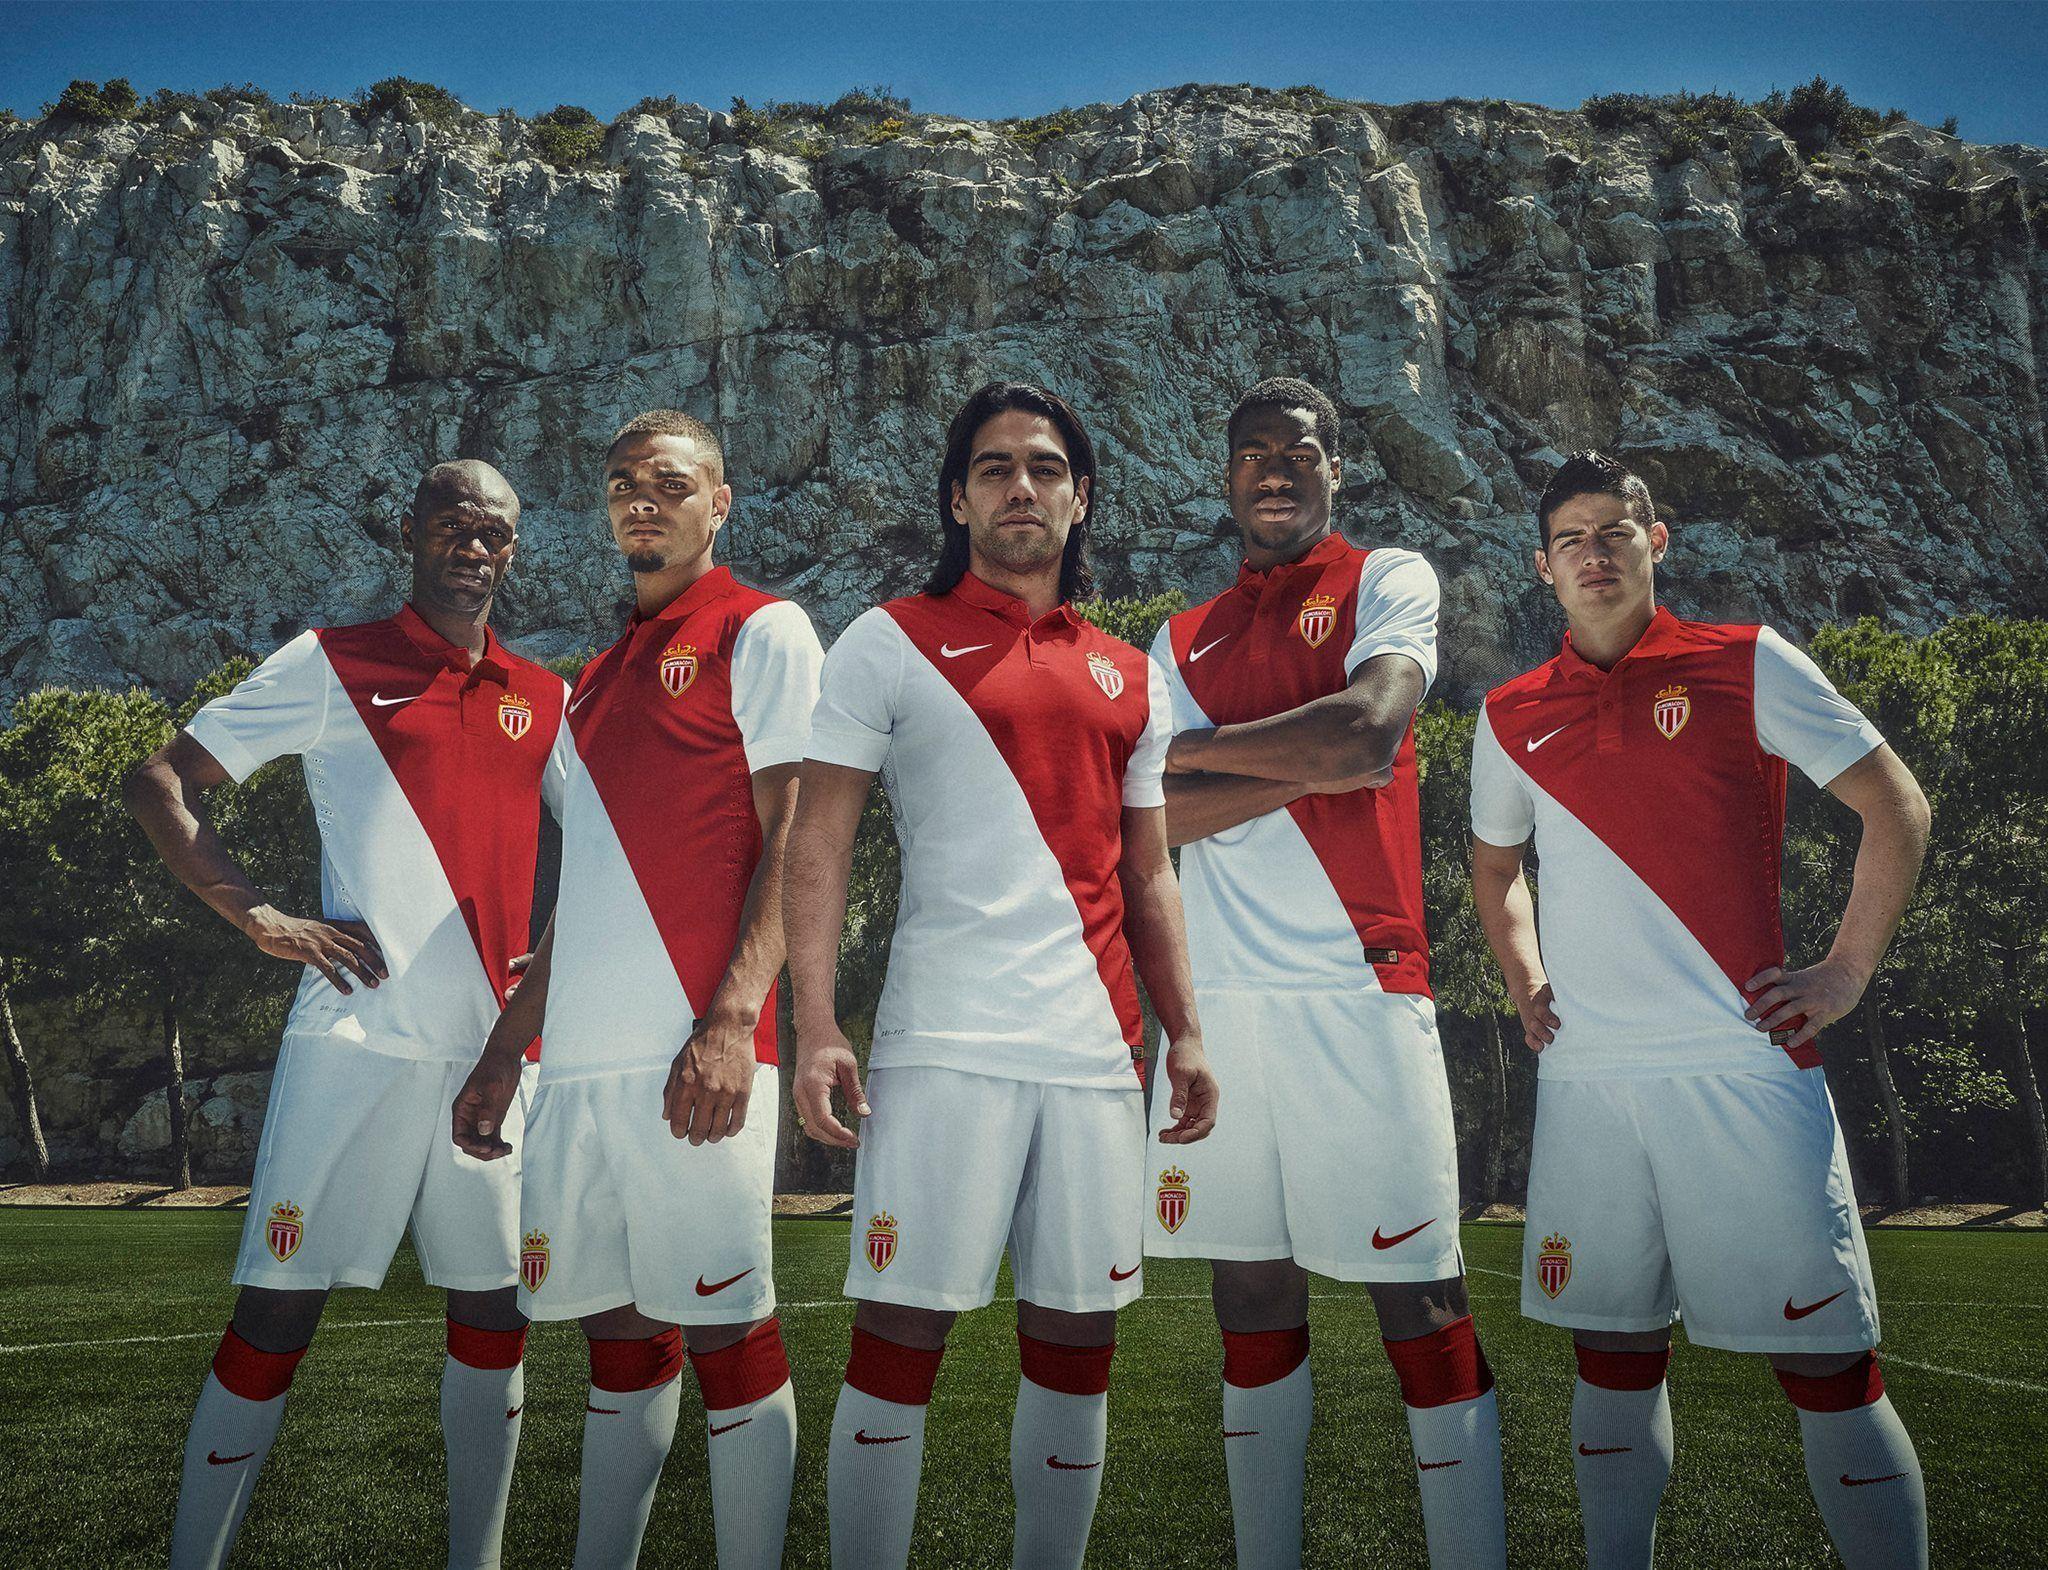 AS Monaco 2014 2015 Nike Home Kit Jersey Wallpaper Wide Or HD